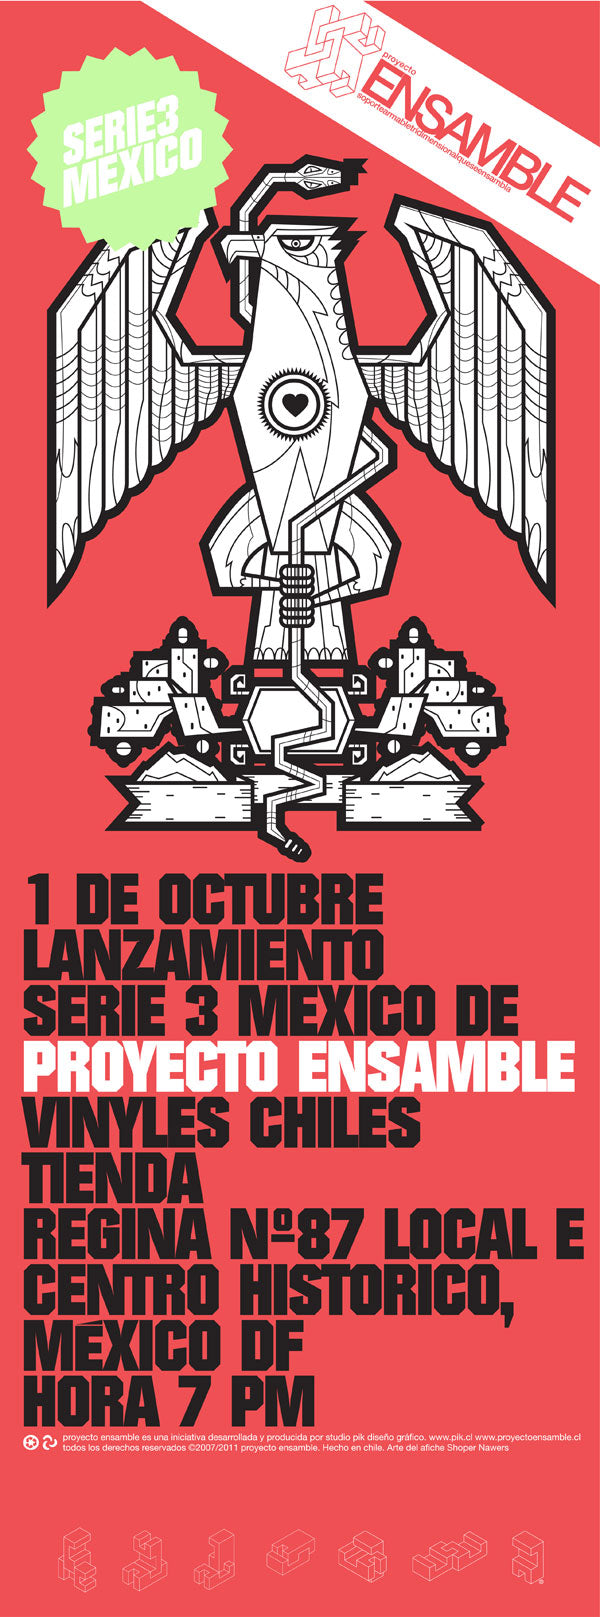 Lanzamiento Proyecto Ensamble Serie 3 México